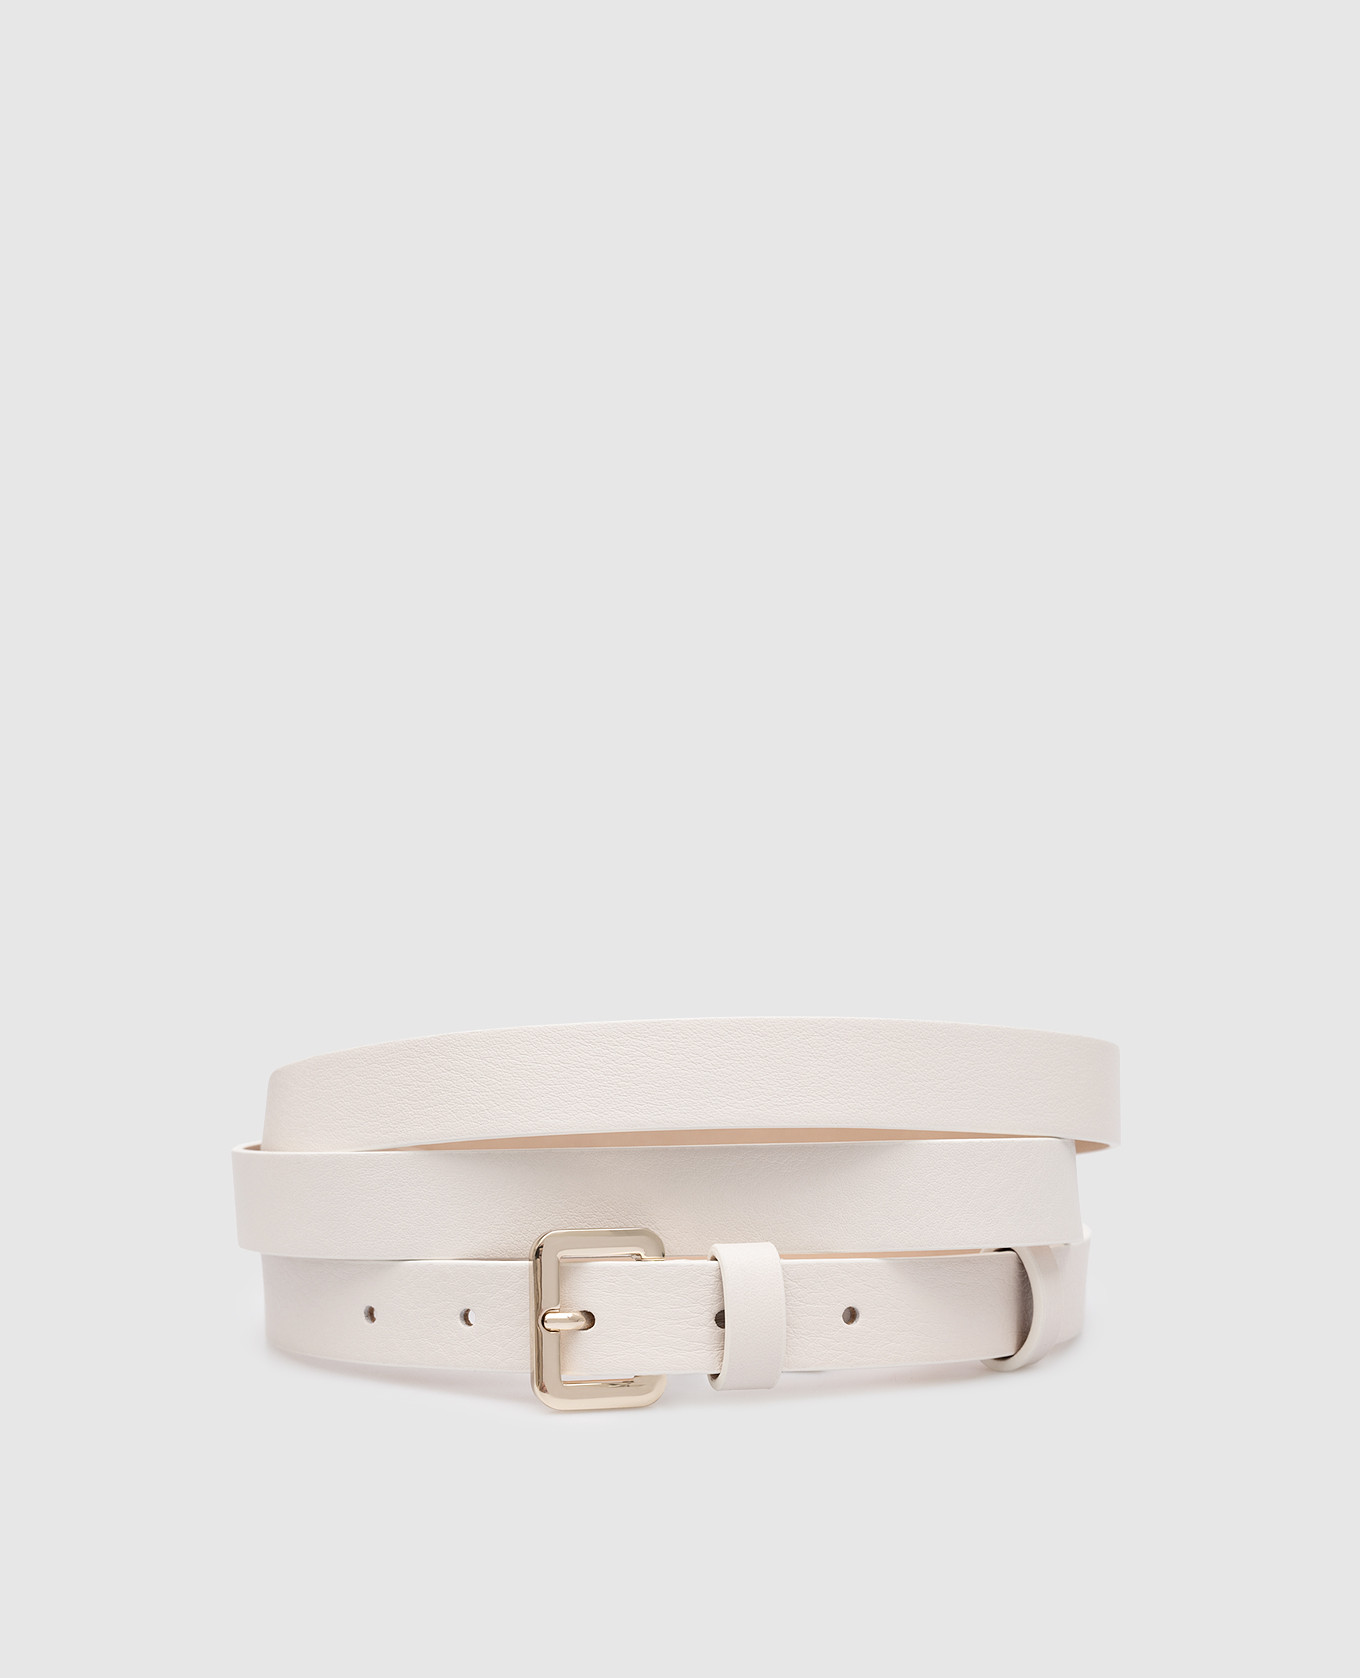 MALAGA white leather belt